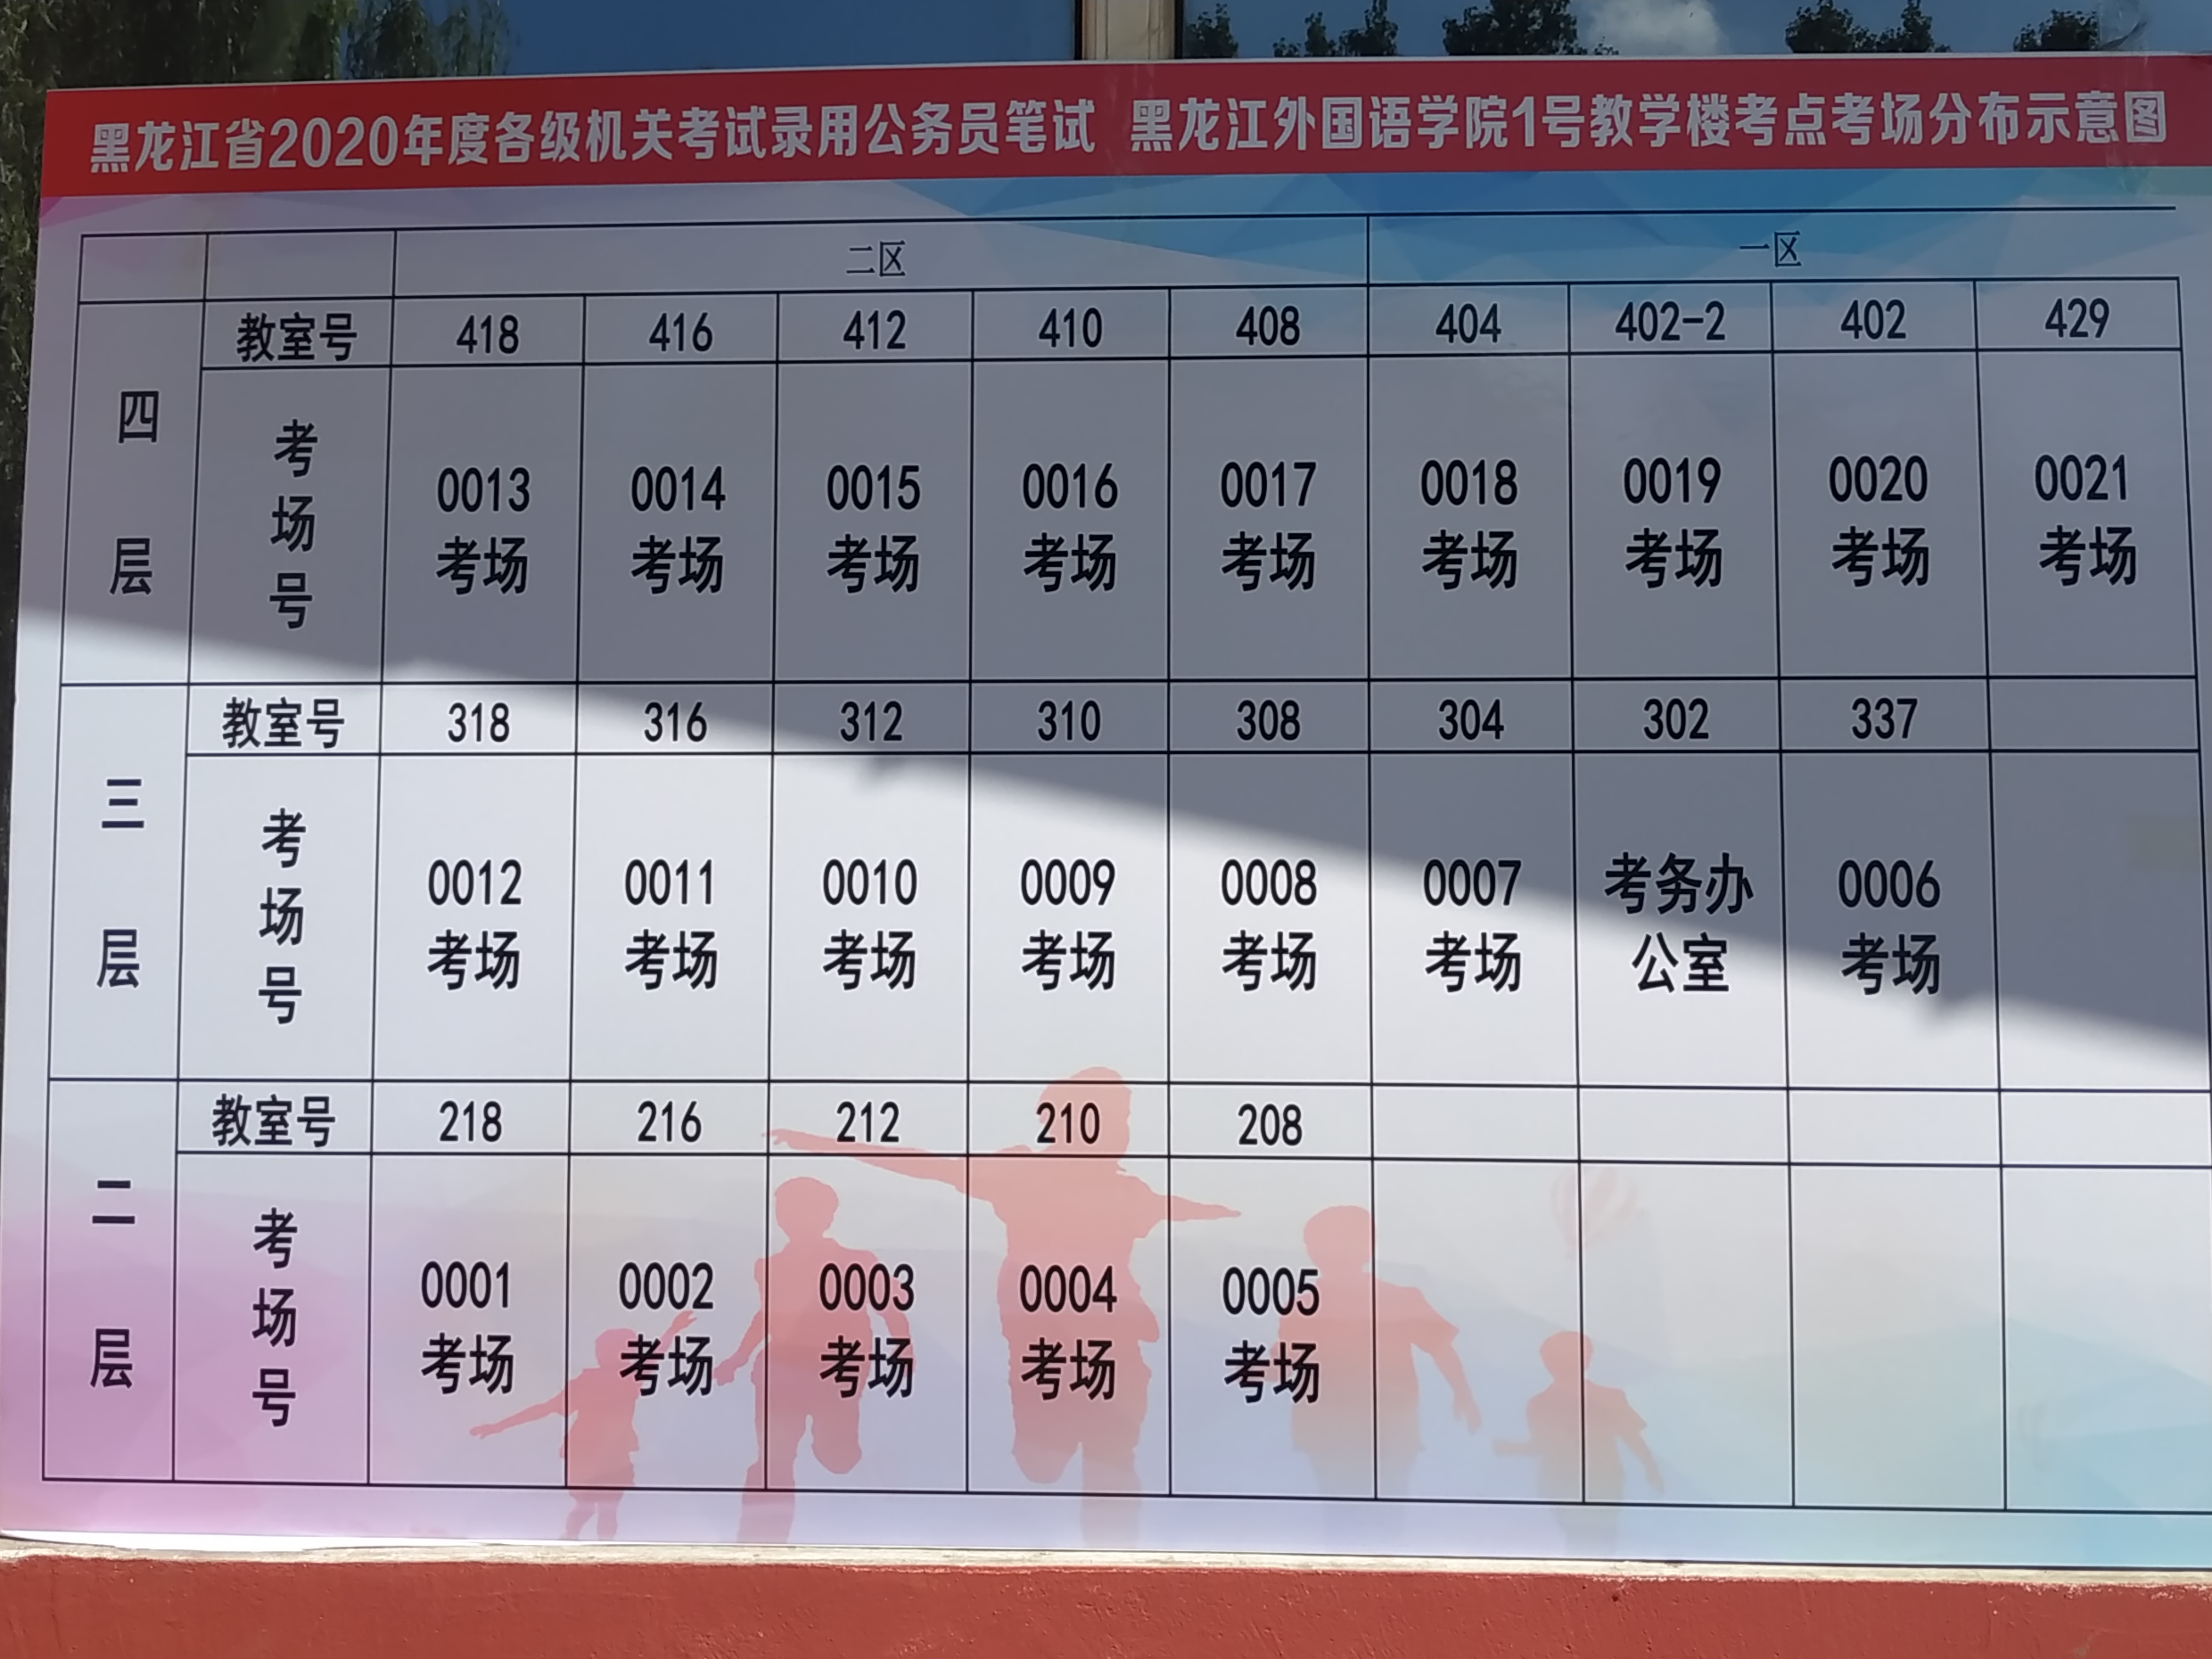 2020年黑龙江公务员考试考场分布图(黑龙江外国语学院)